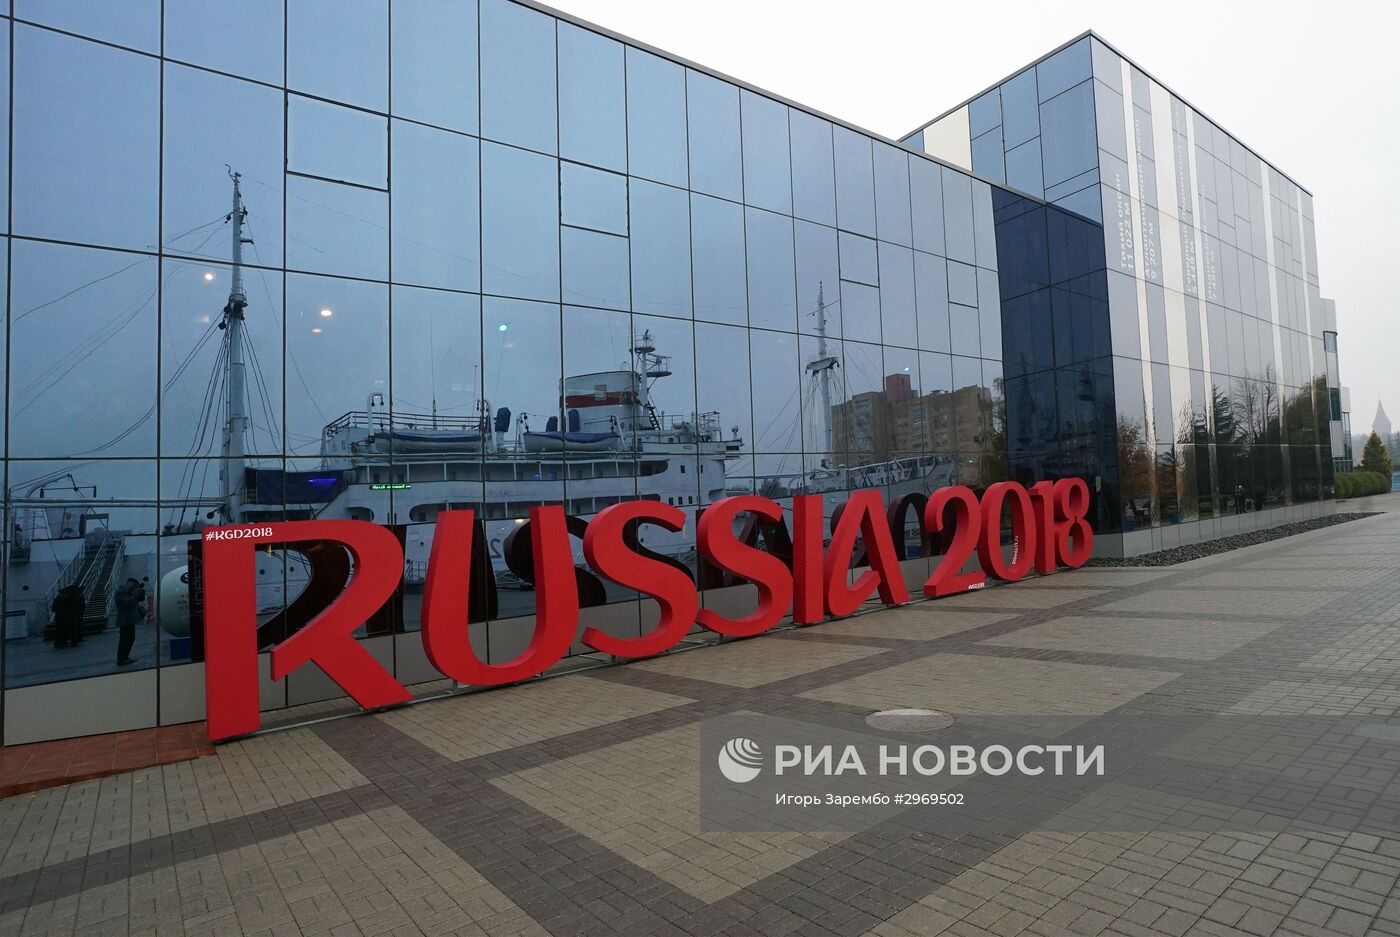 Инсталляция "Russia 2018" в Калининграде